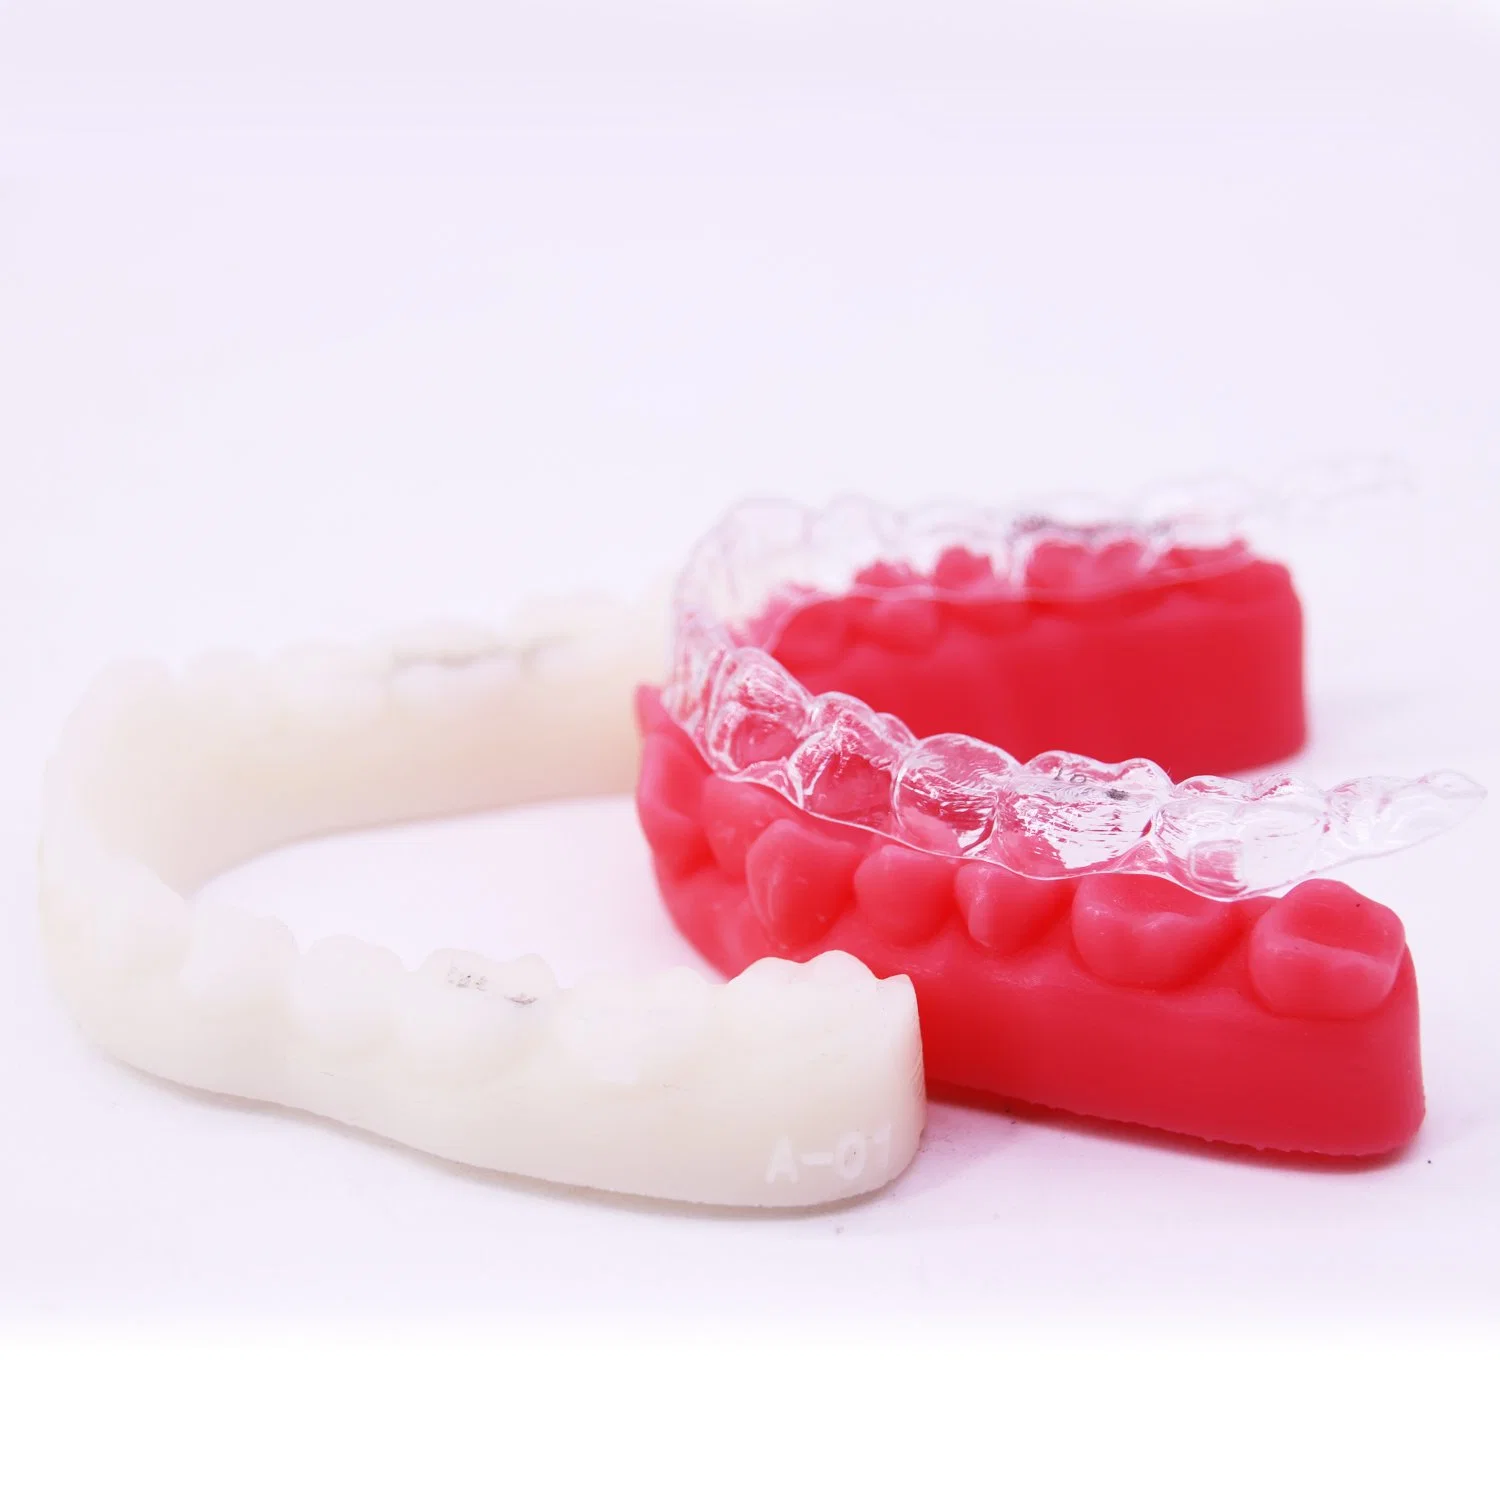 Zs SLA 520 3d'imprimante de résine parfait pour les bijoux Cire dentaire